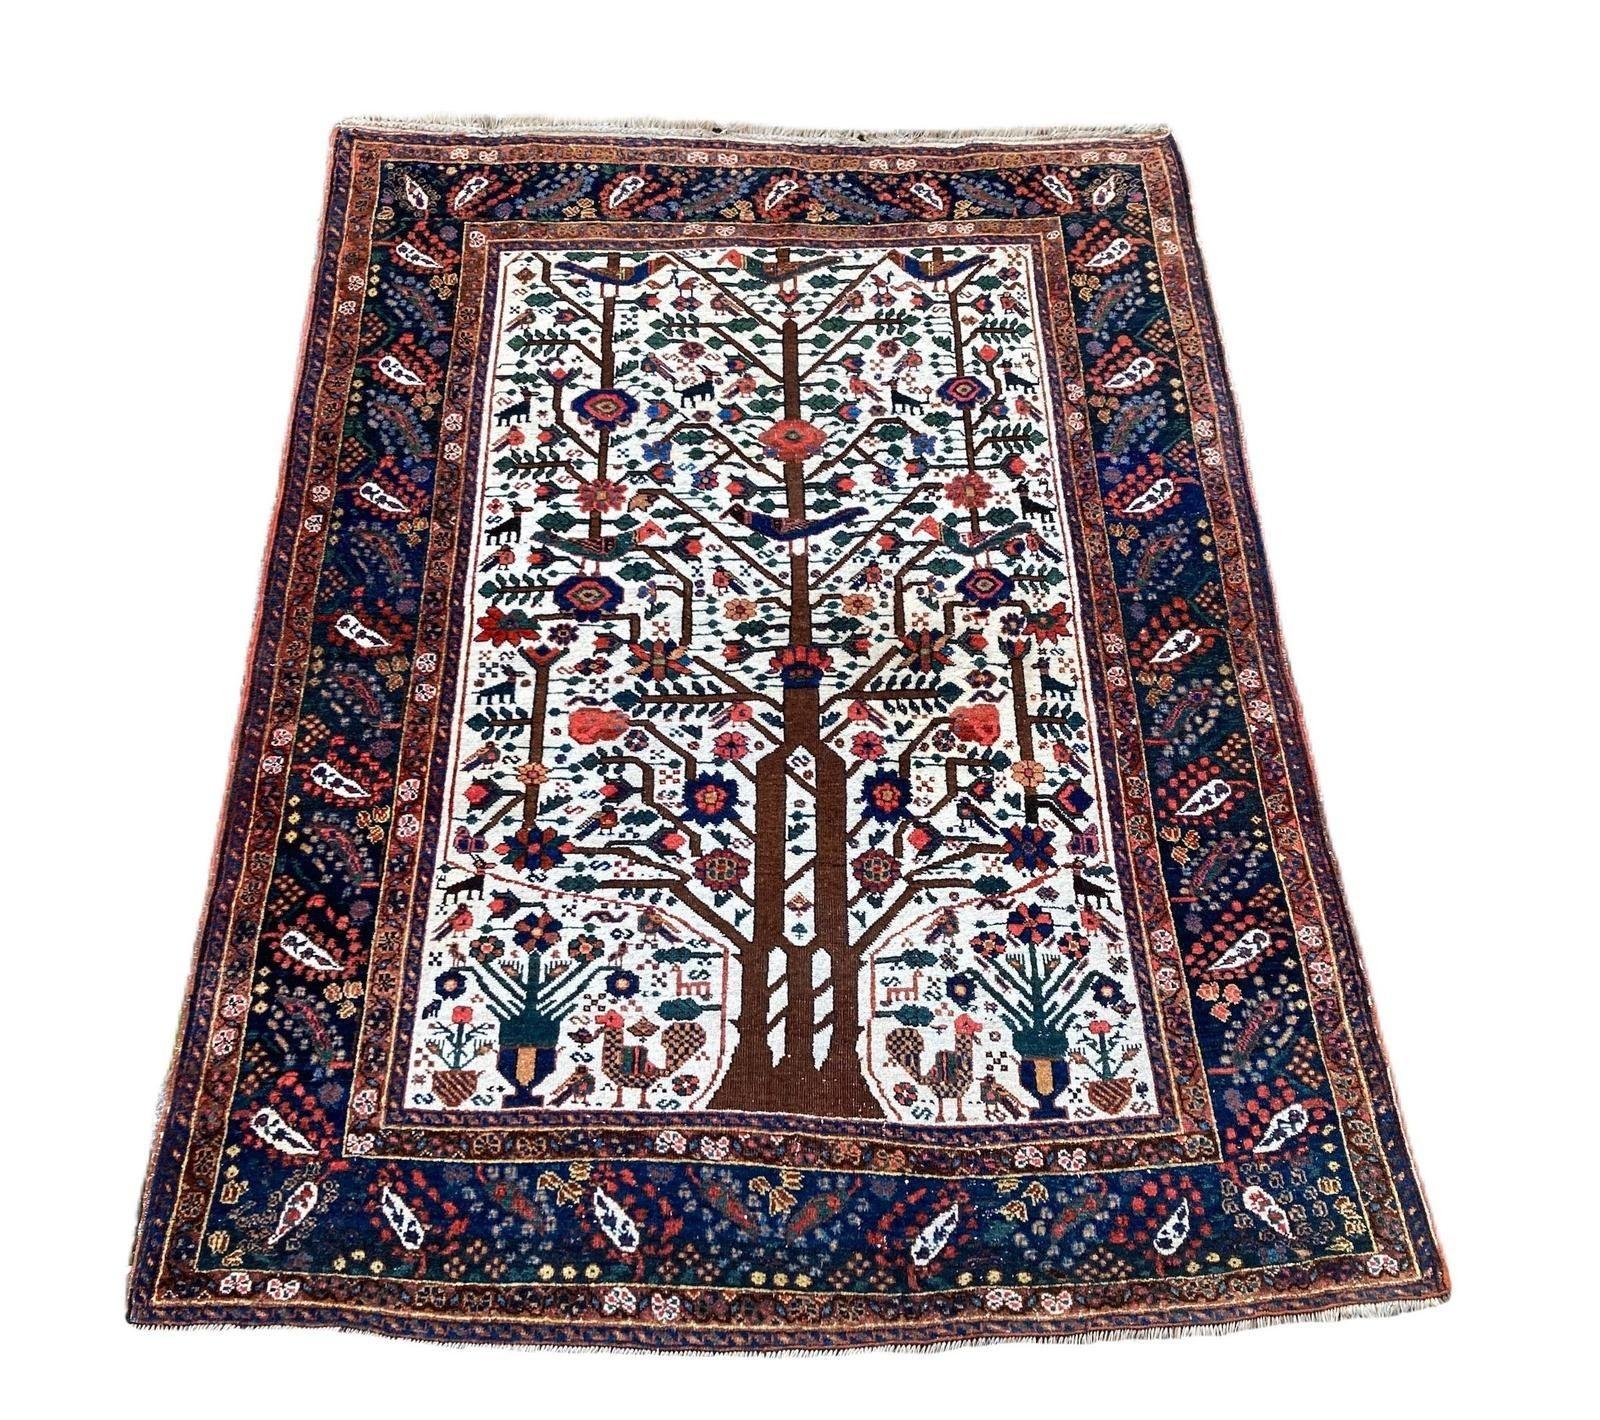 Ein wunderschöner antiker Neyriz-Teppich, handgewebt um 1910 mit einem Lebensbaum-Muster, durchsetzt mit stilisierten Vögeln und Tieren auf einem elfenbeinfarbenen Feld und einer indigoblauen Bordüre. Fabelhafte Sekundärfarben und ein großartiges